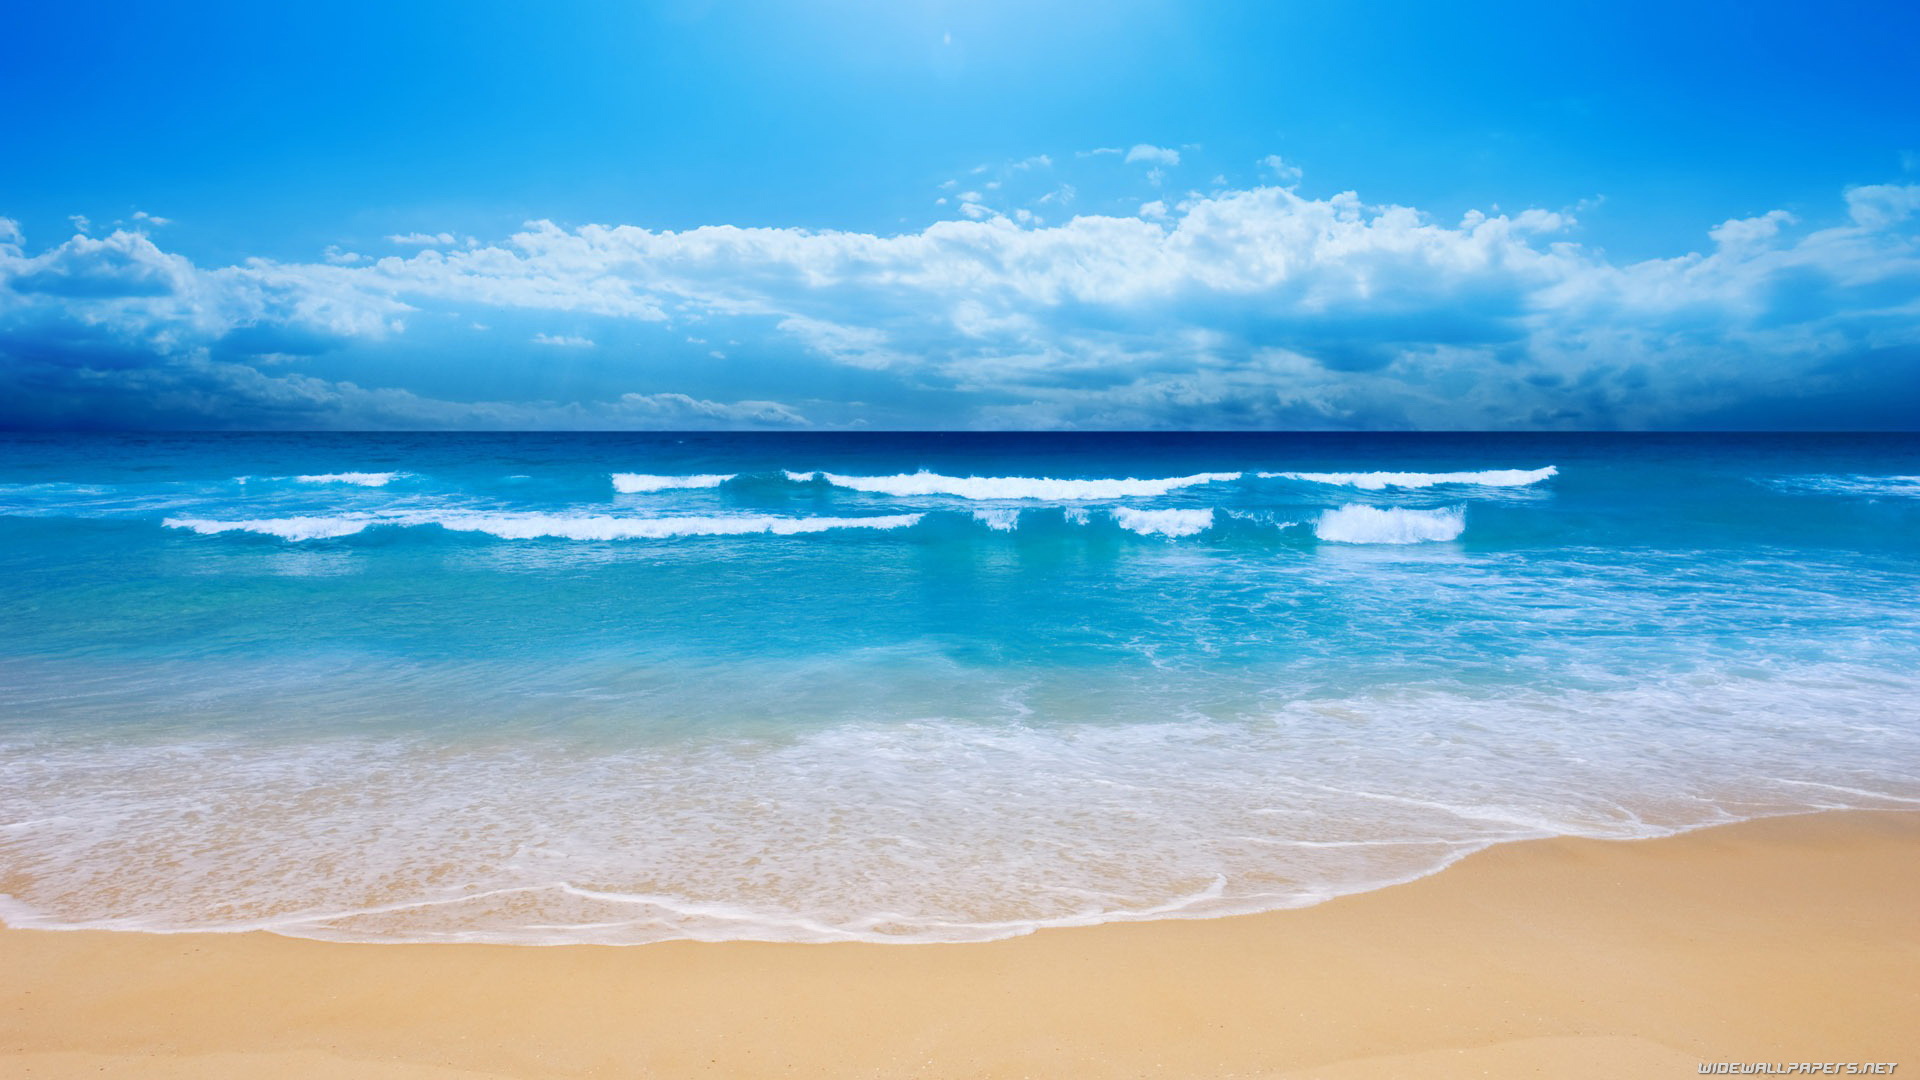 Bạn đang cần một chút sự bình yên trong cuộc sống? Hãy khám phá các hình nền bãi biển đẹp mắt này. Với những dòng sóng nhẹ nhàng, biển trong xanh cùng nắng đang hạ xuống, bạn sẽ tìm thấy được sự yên bình và thư giãn trong chính bức hình nền của mình.